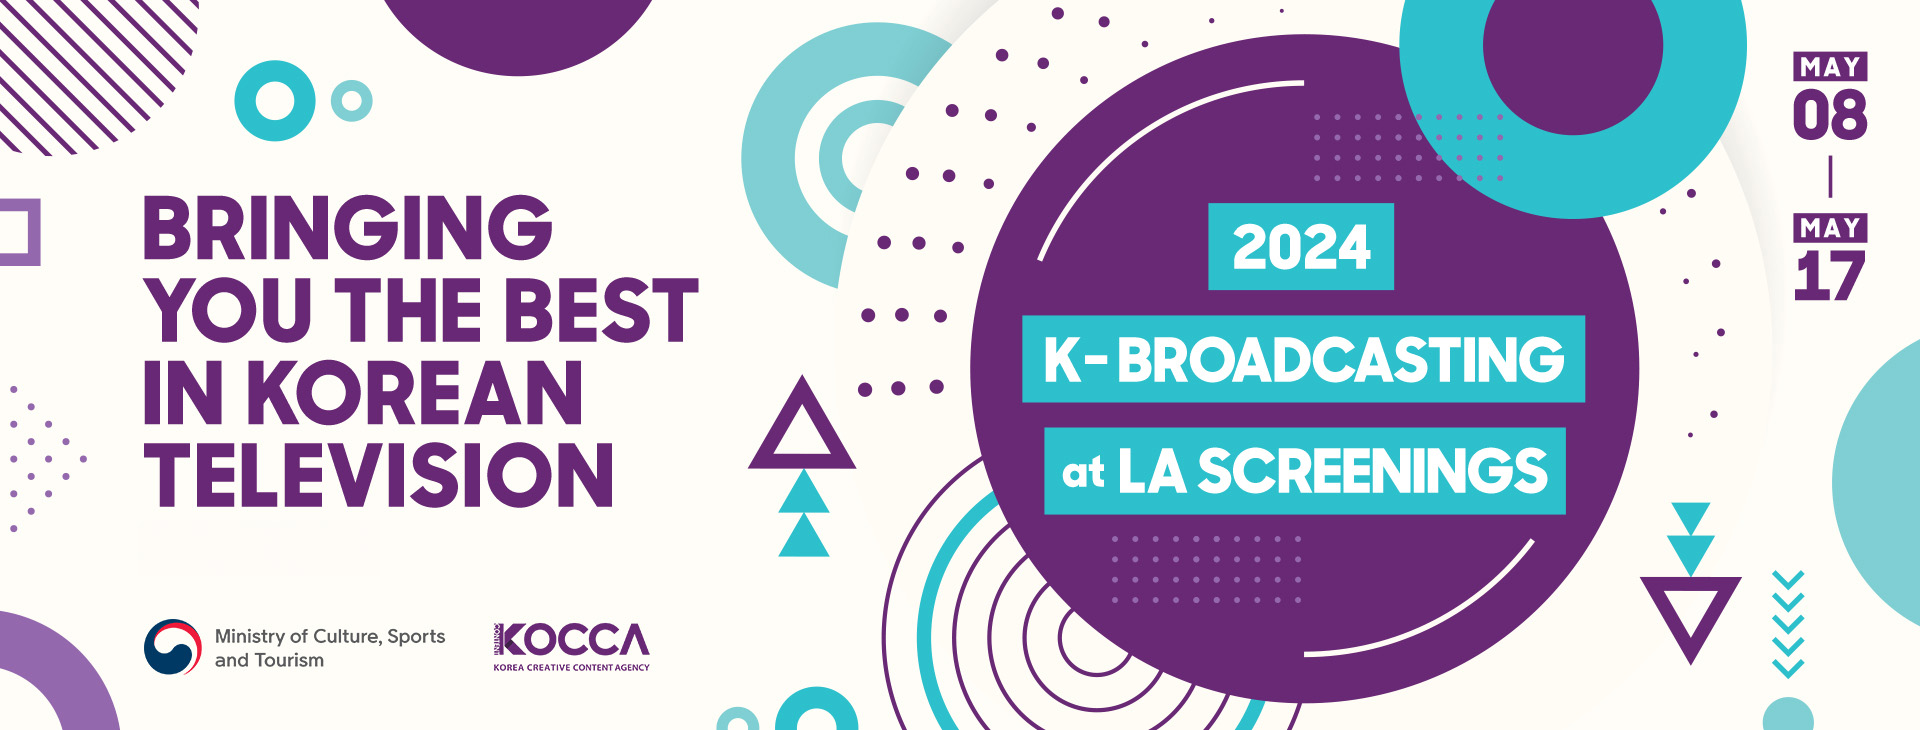 2024 K-Broadcasting at LA Screenings